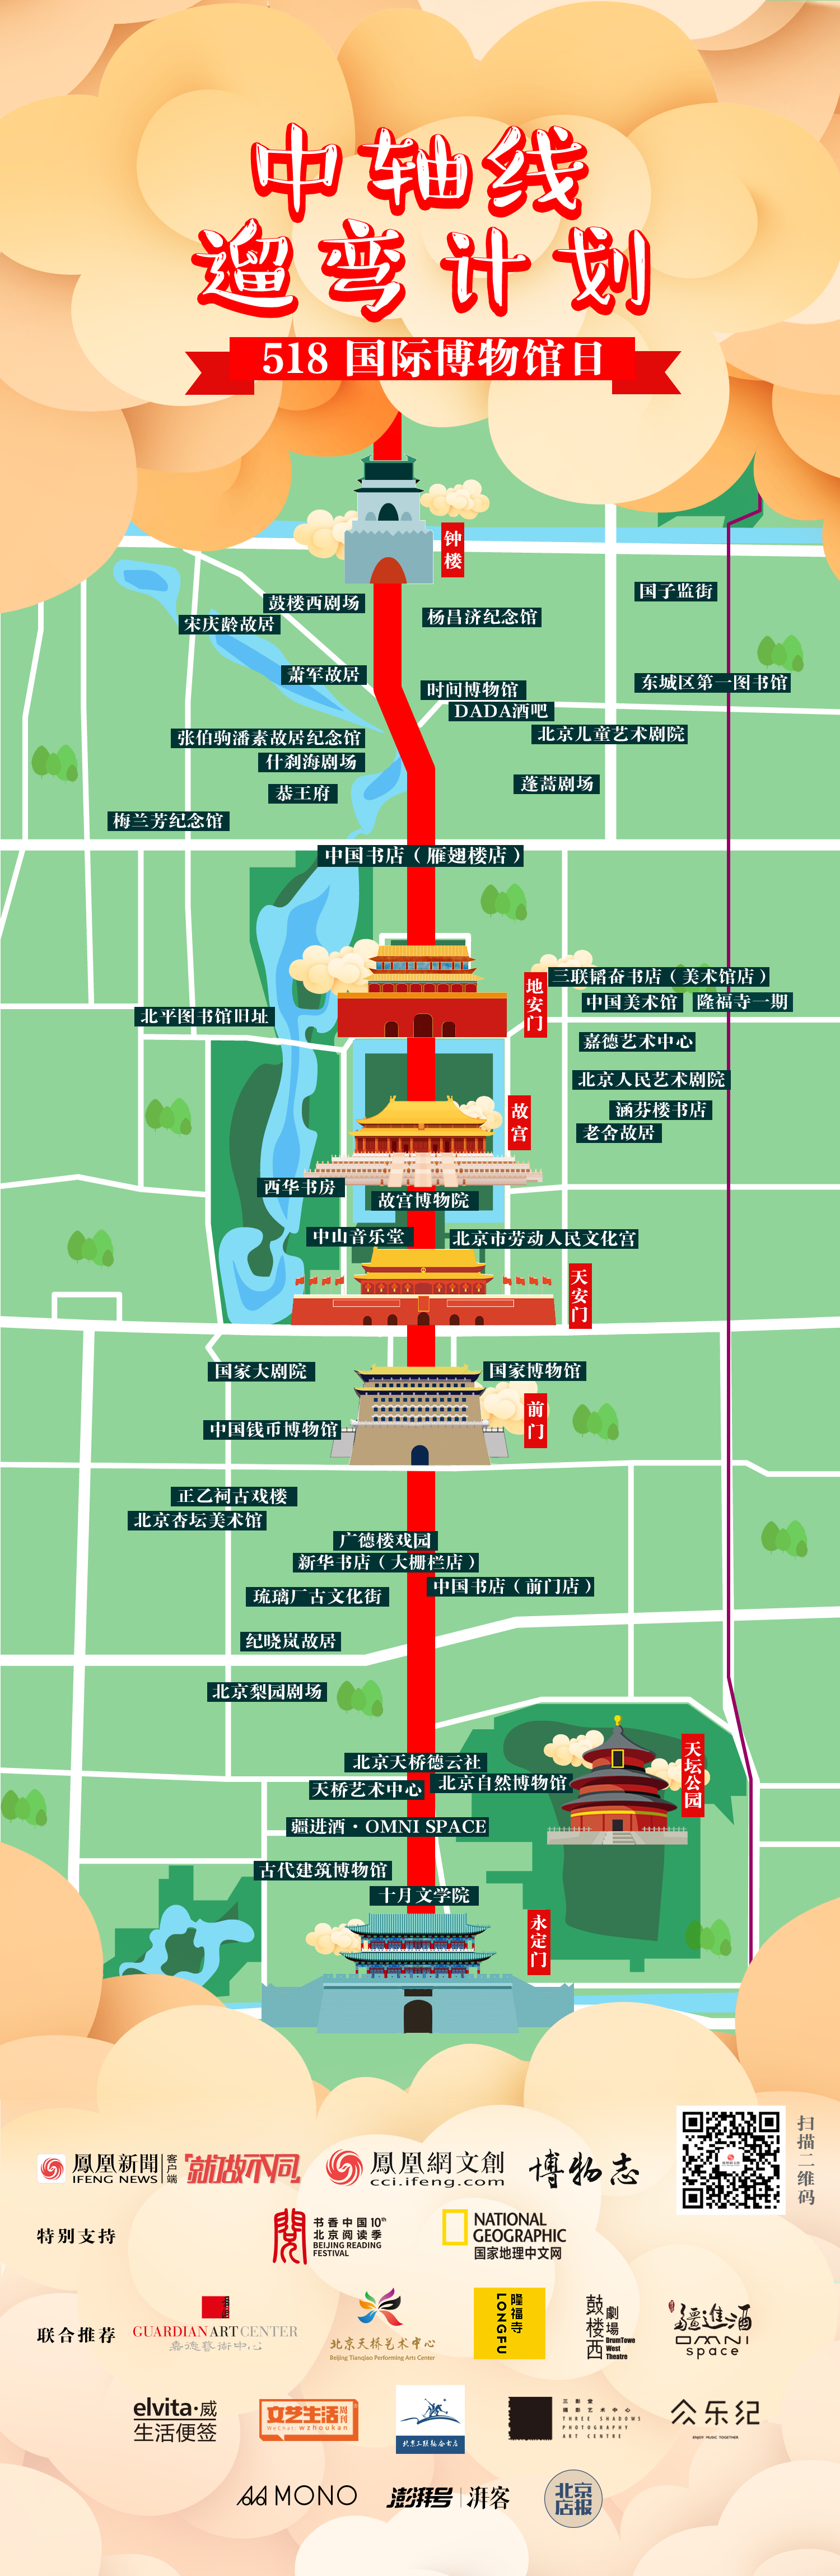 推出京城文创地图——"中轴线遛弯计划",以北京中轴线作为线索,探寻中